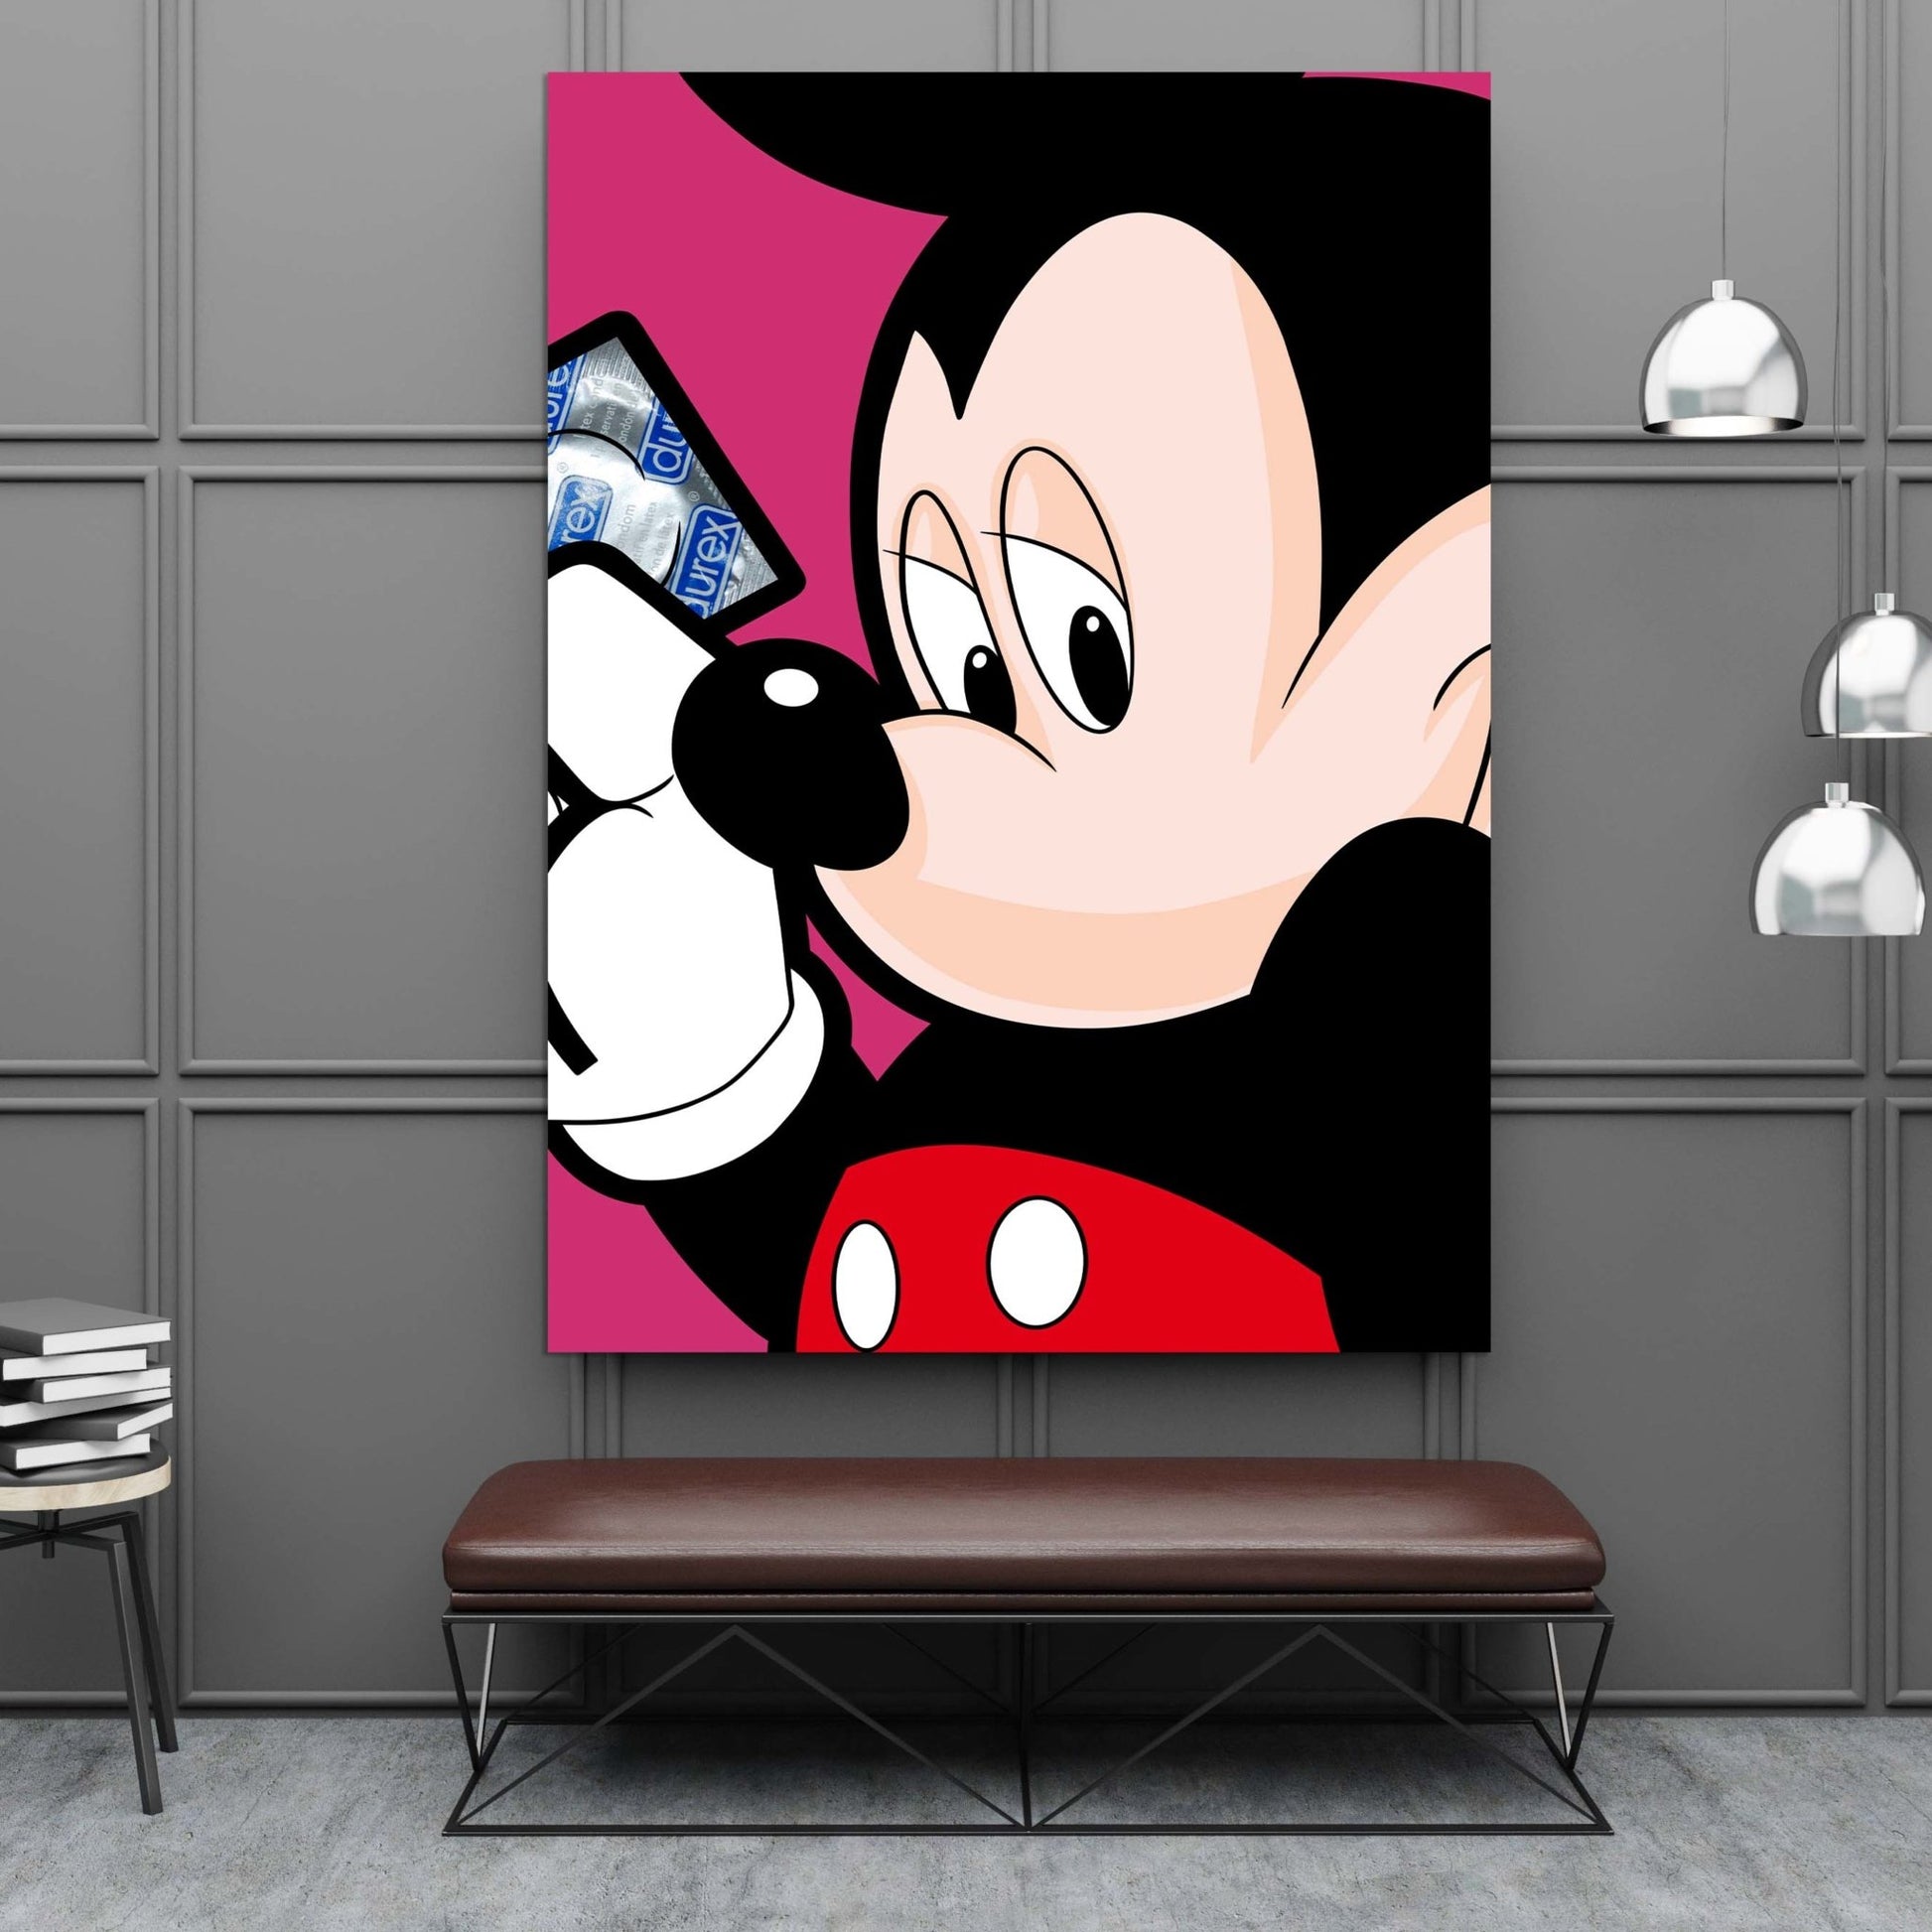 Mouse Pop Canvas - Luxury Art Canvas